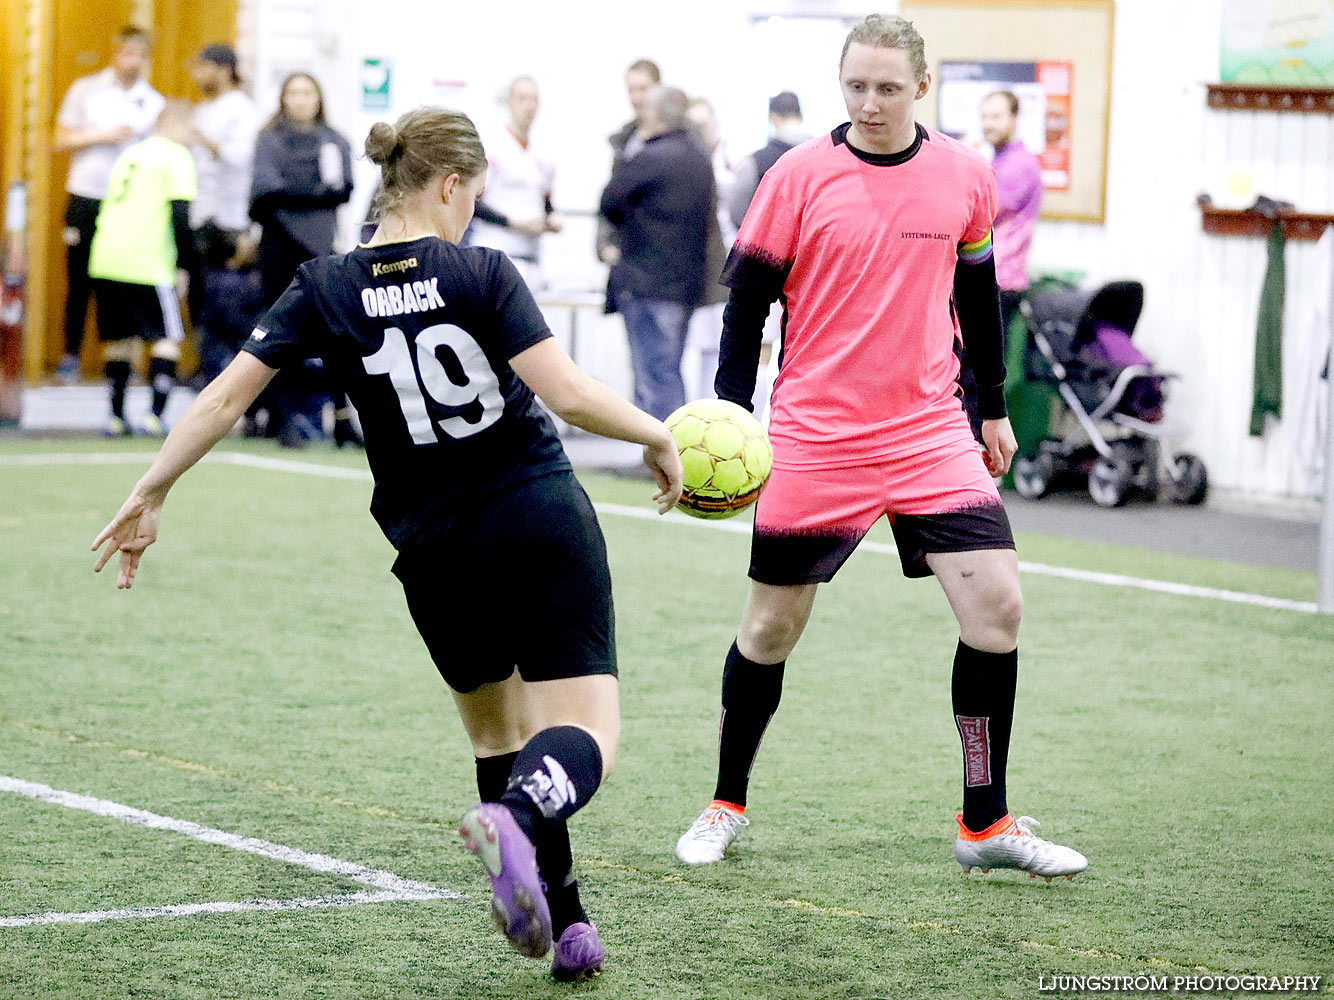 Skövde Soccer Championship,mix,Ulvahallen,Ulvåker,Sverige,Fotboll,,2016,143112